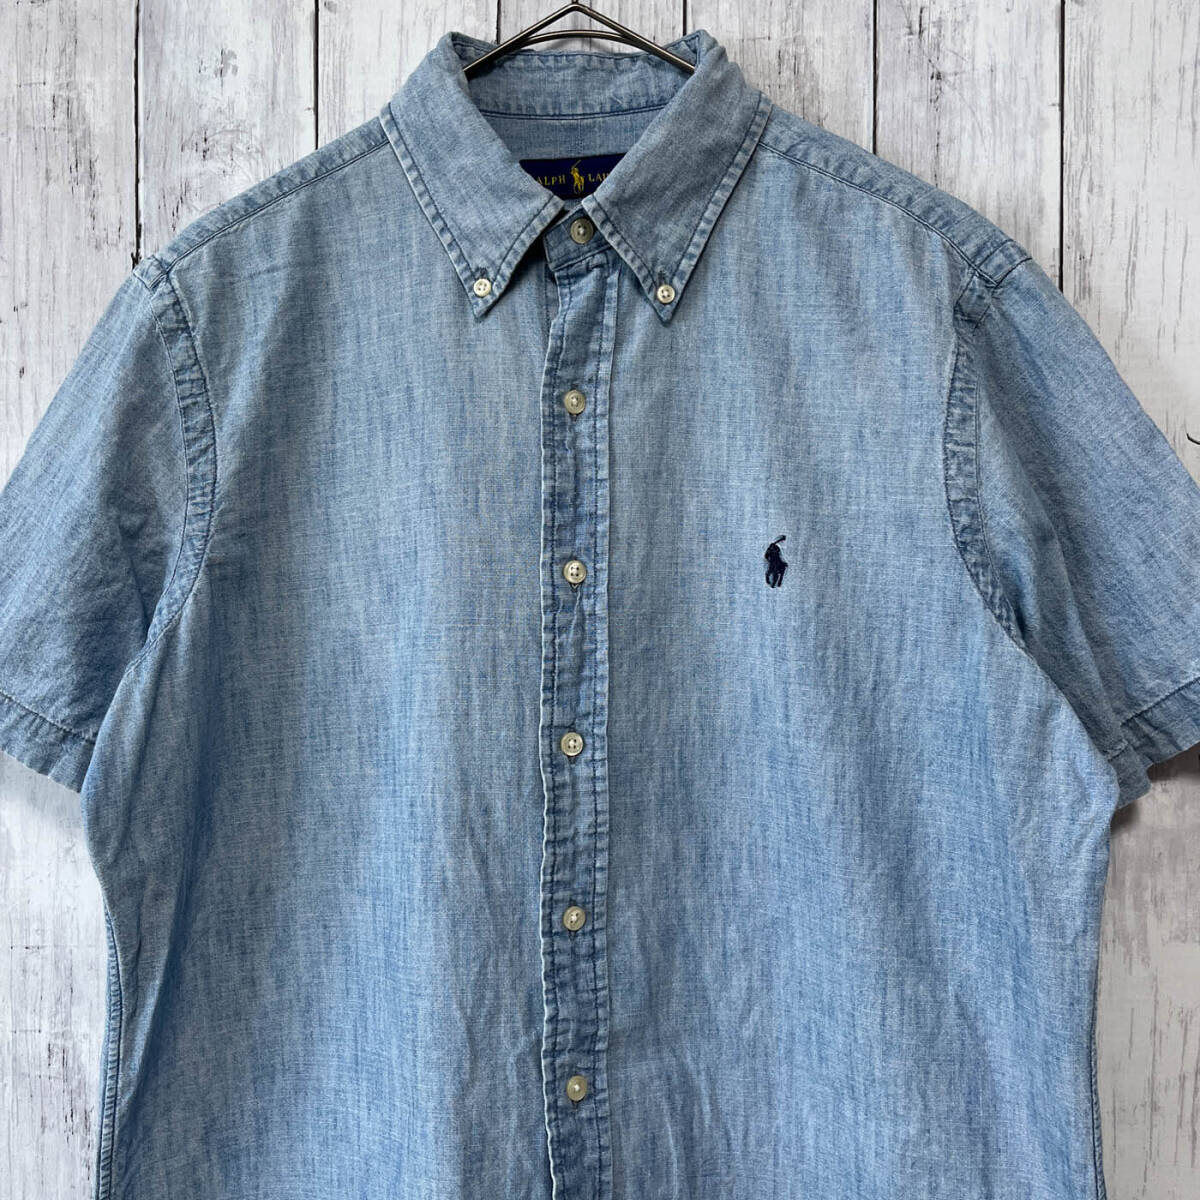  Ralph Lauren Ralph Lauren Denim рубашка рубашка с коротким рукавом мужской one отметка хлопок 100% M размер 5-535